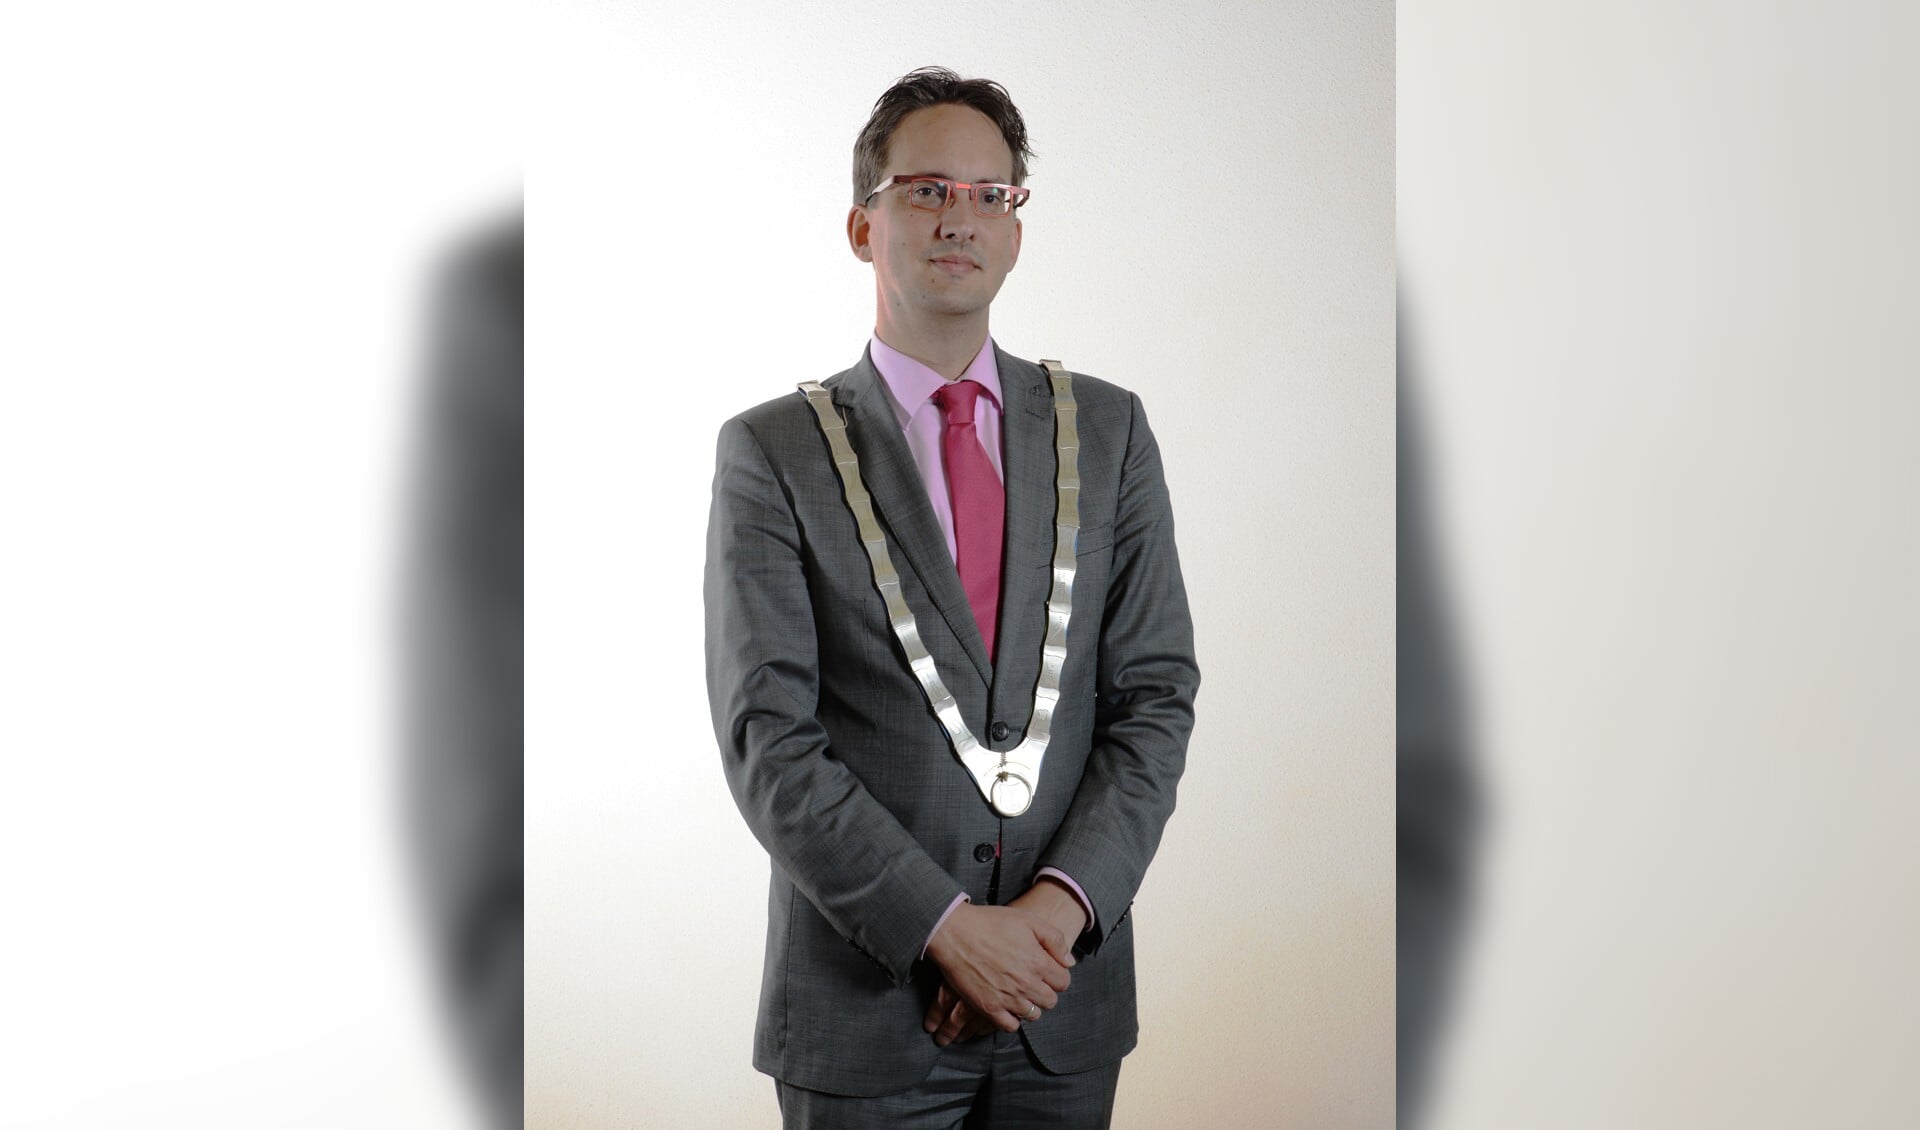 Burgemeester Michiel Uitdehaag.
(Foto Gemeente Texel)